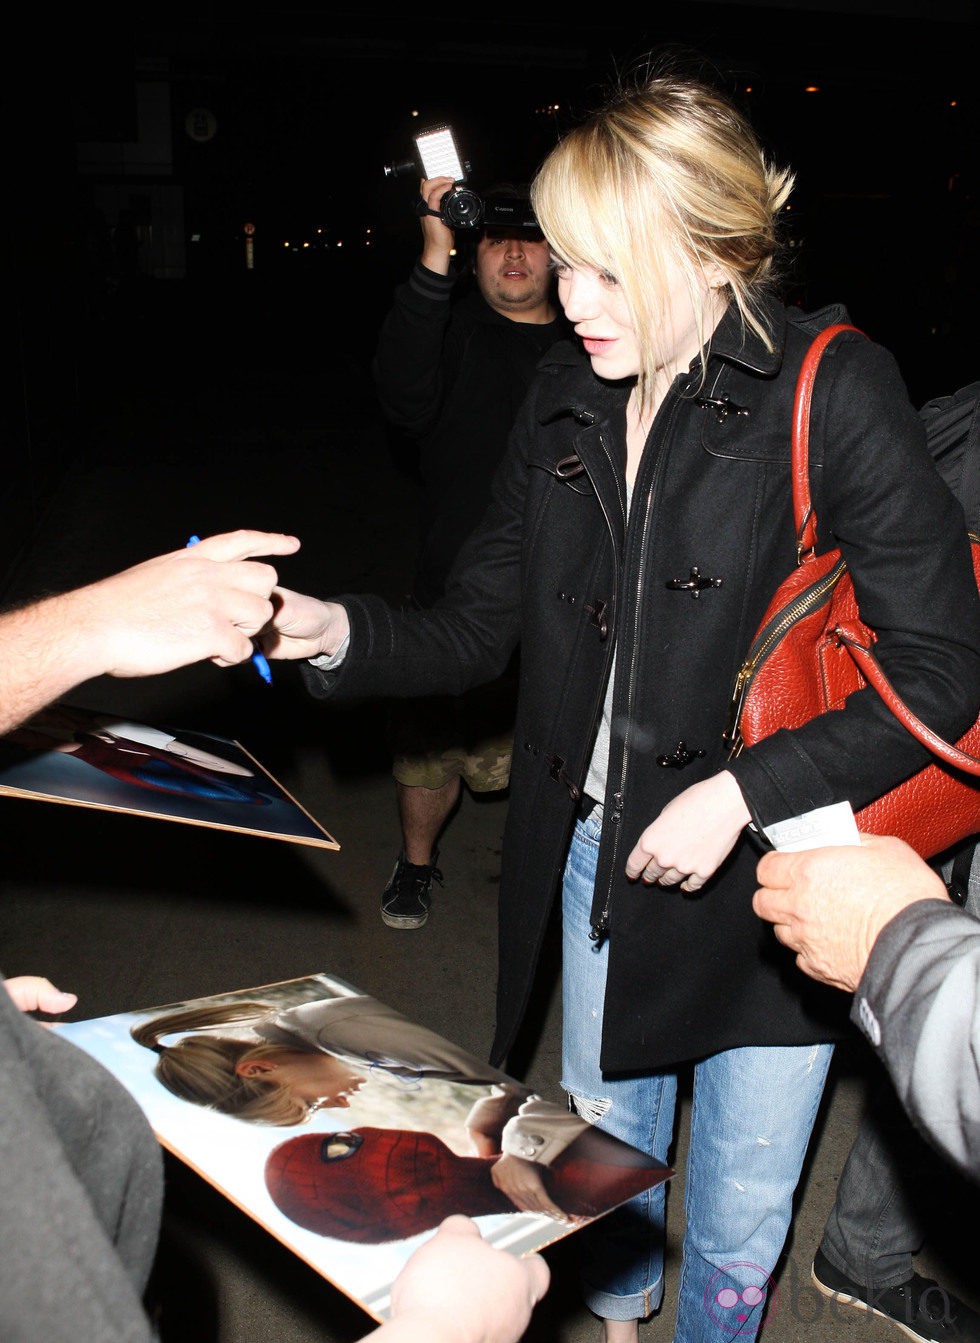 Emma Stone firma autógrafos en el aeropuerto de Los Ángeles